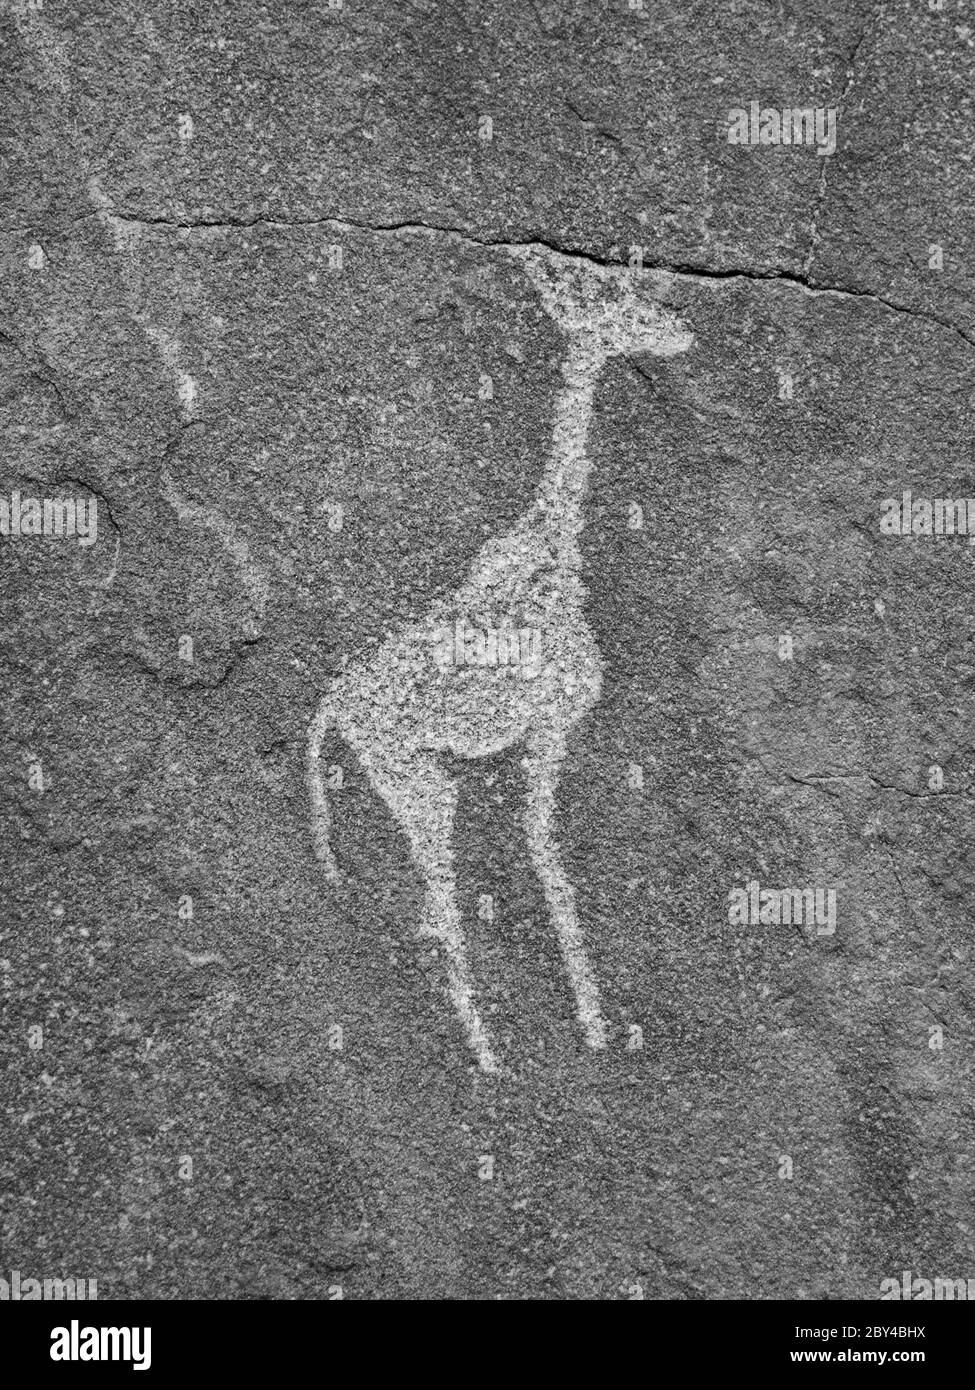 Buschmann prähistorische Felsgravur - Giraffe, Twyfelfontein, Namibia. Schwarzweiß-Bild. Stockfoto